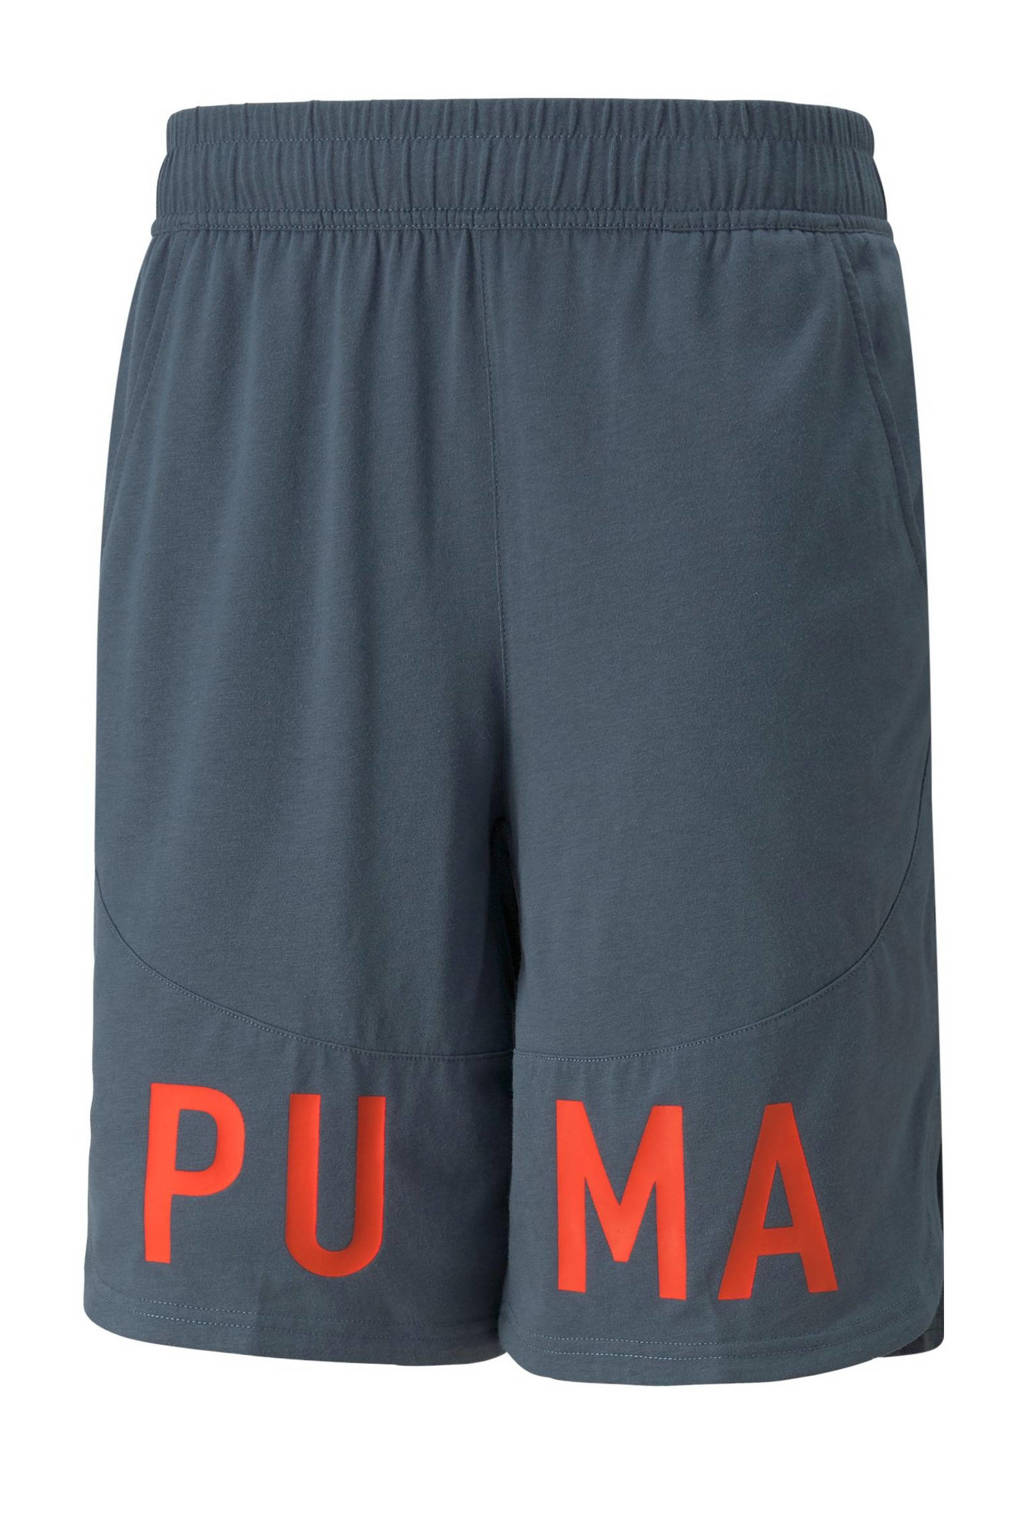 Puma   9" sportshort grijsblauw/oranje